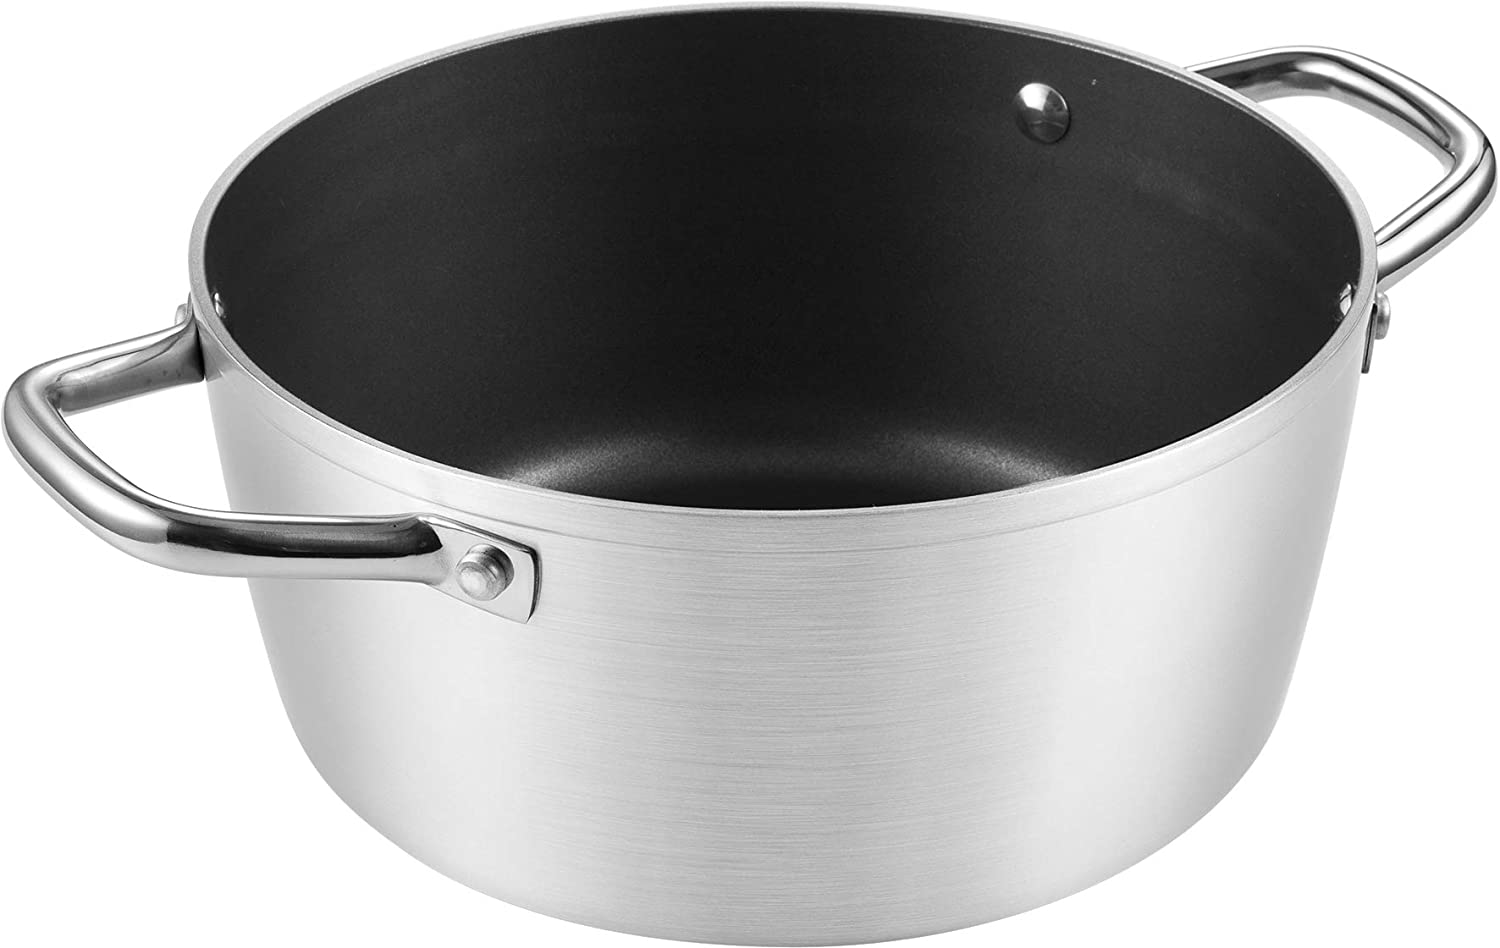 Tescoma Diameter 18 cm - 1.8 l Grandchef casserole dish, grey